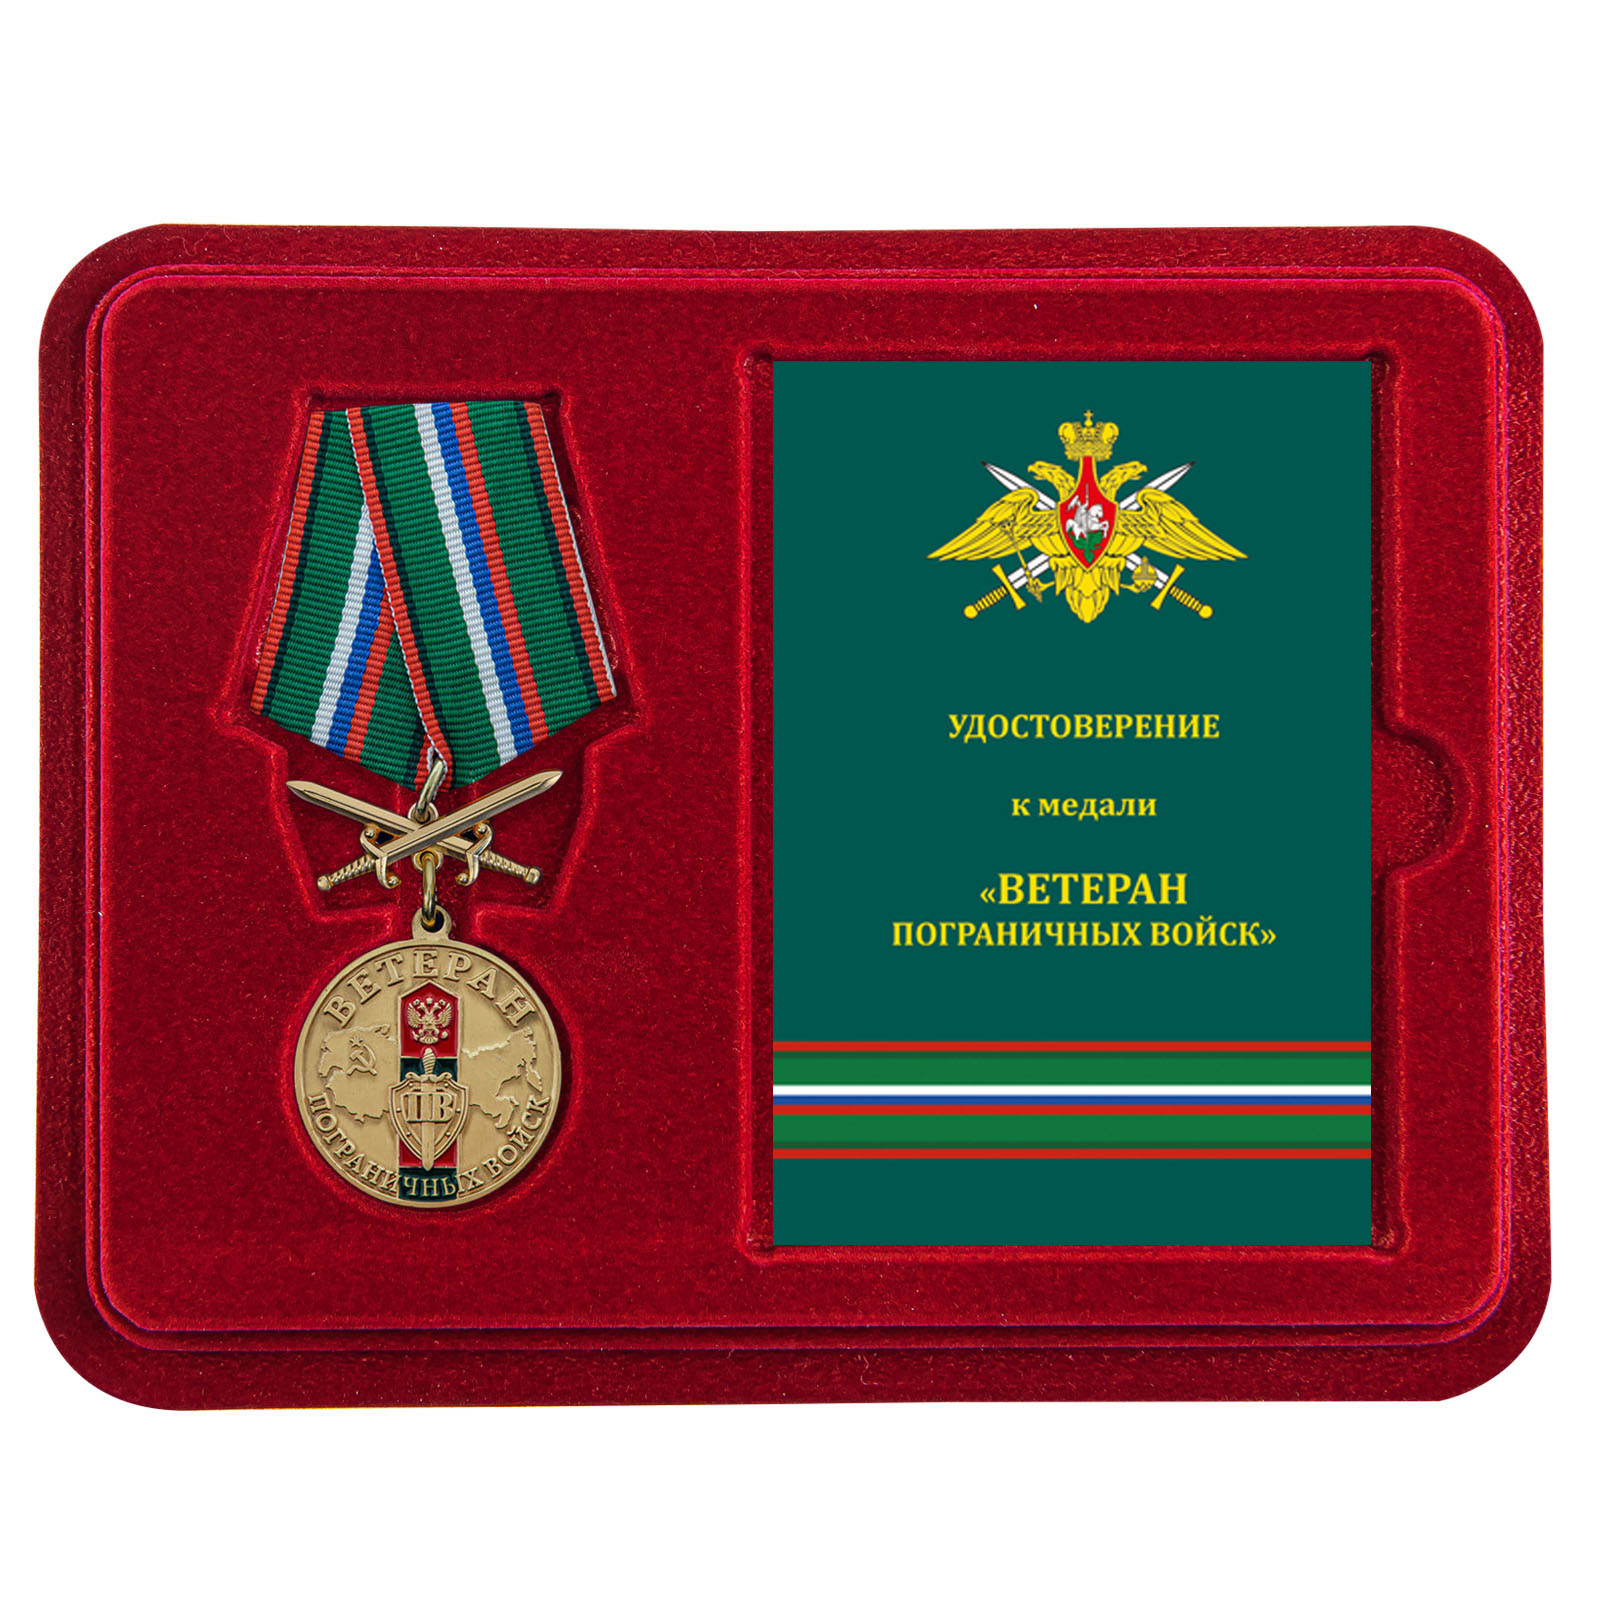 Купить медаль Ветерану Пограничных войск по специальной цене